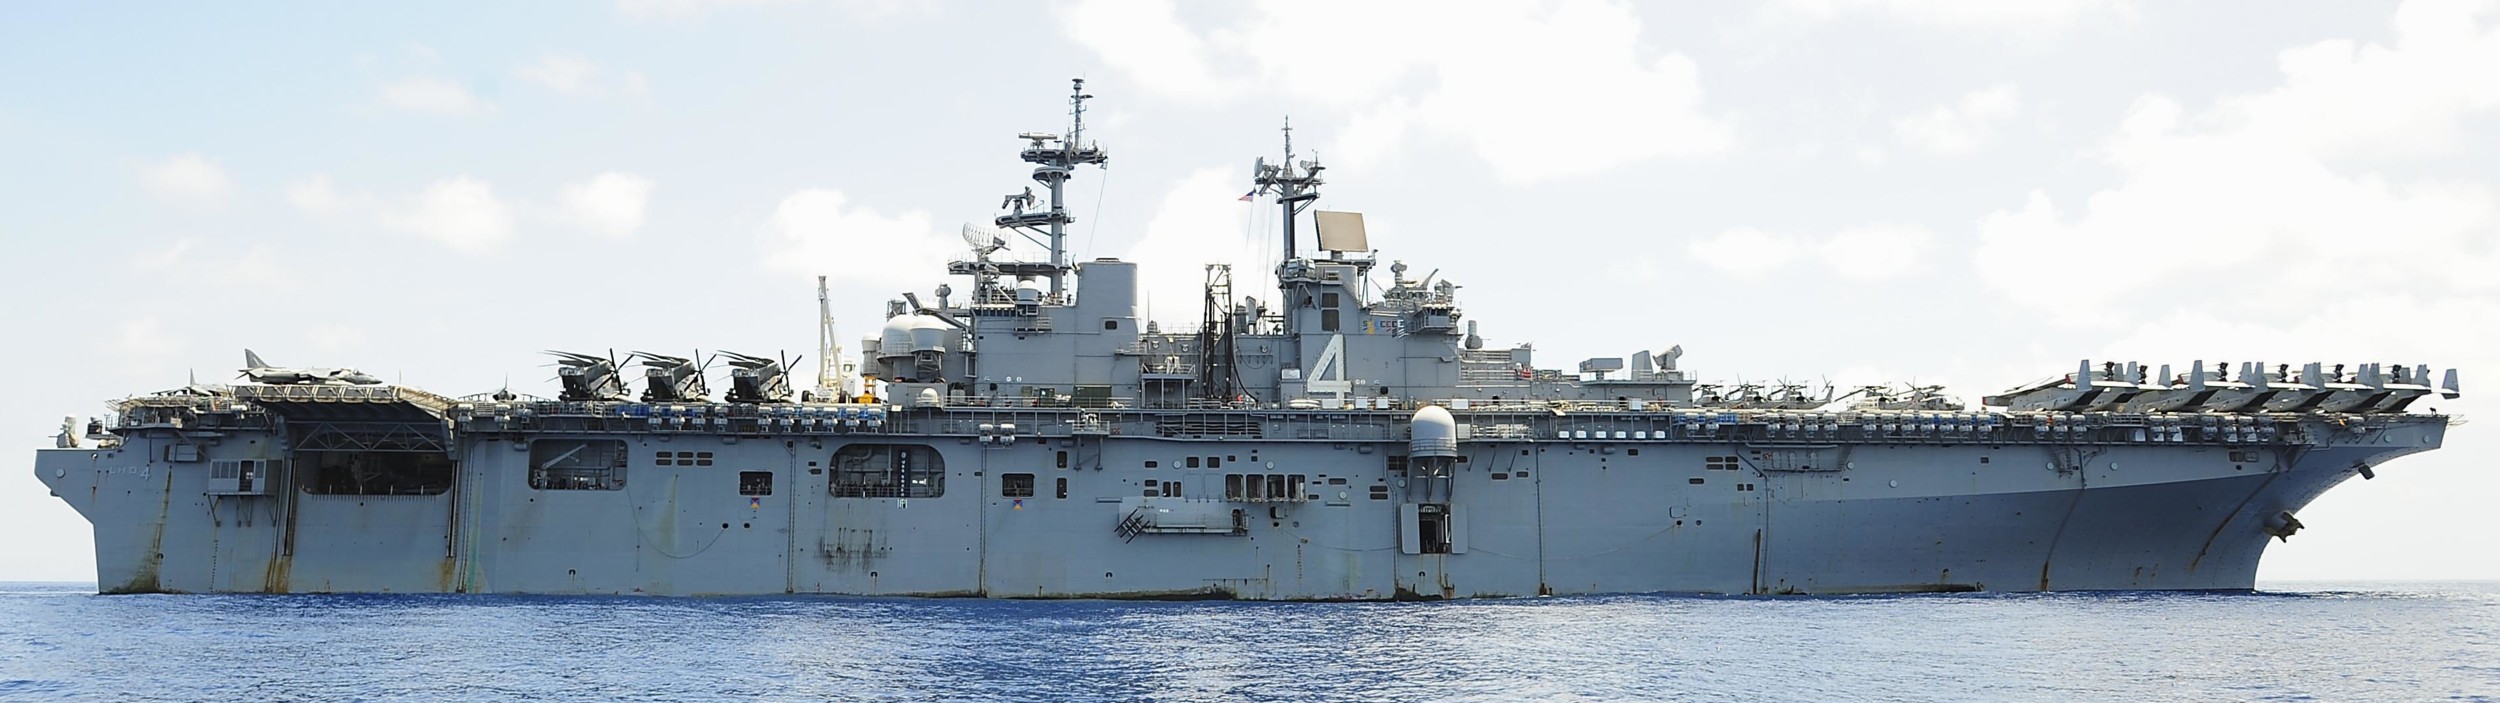 lhd-4 uss boxer wasp class amphibious assault ship dock landing us navy marines vmm-166 gulf of aden 110